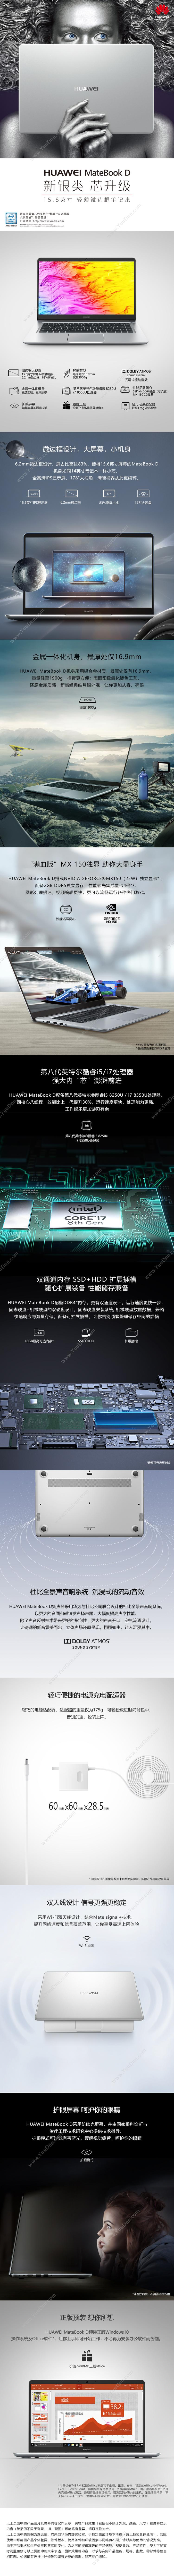 华为 Huawei MateBook D 15.6英寸 i5-8250U 8G 128G+1T 皓月银 笔记本